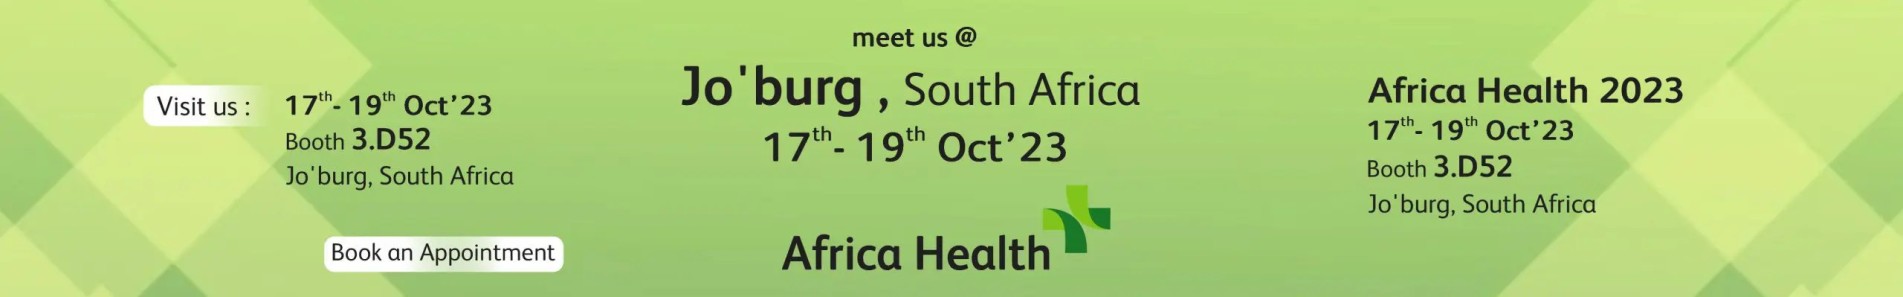 Africa Health 2023 Banner